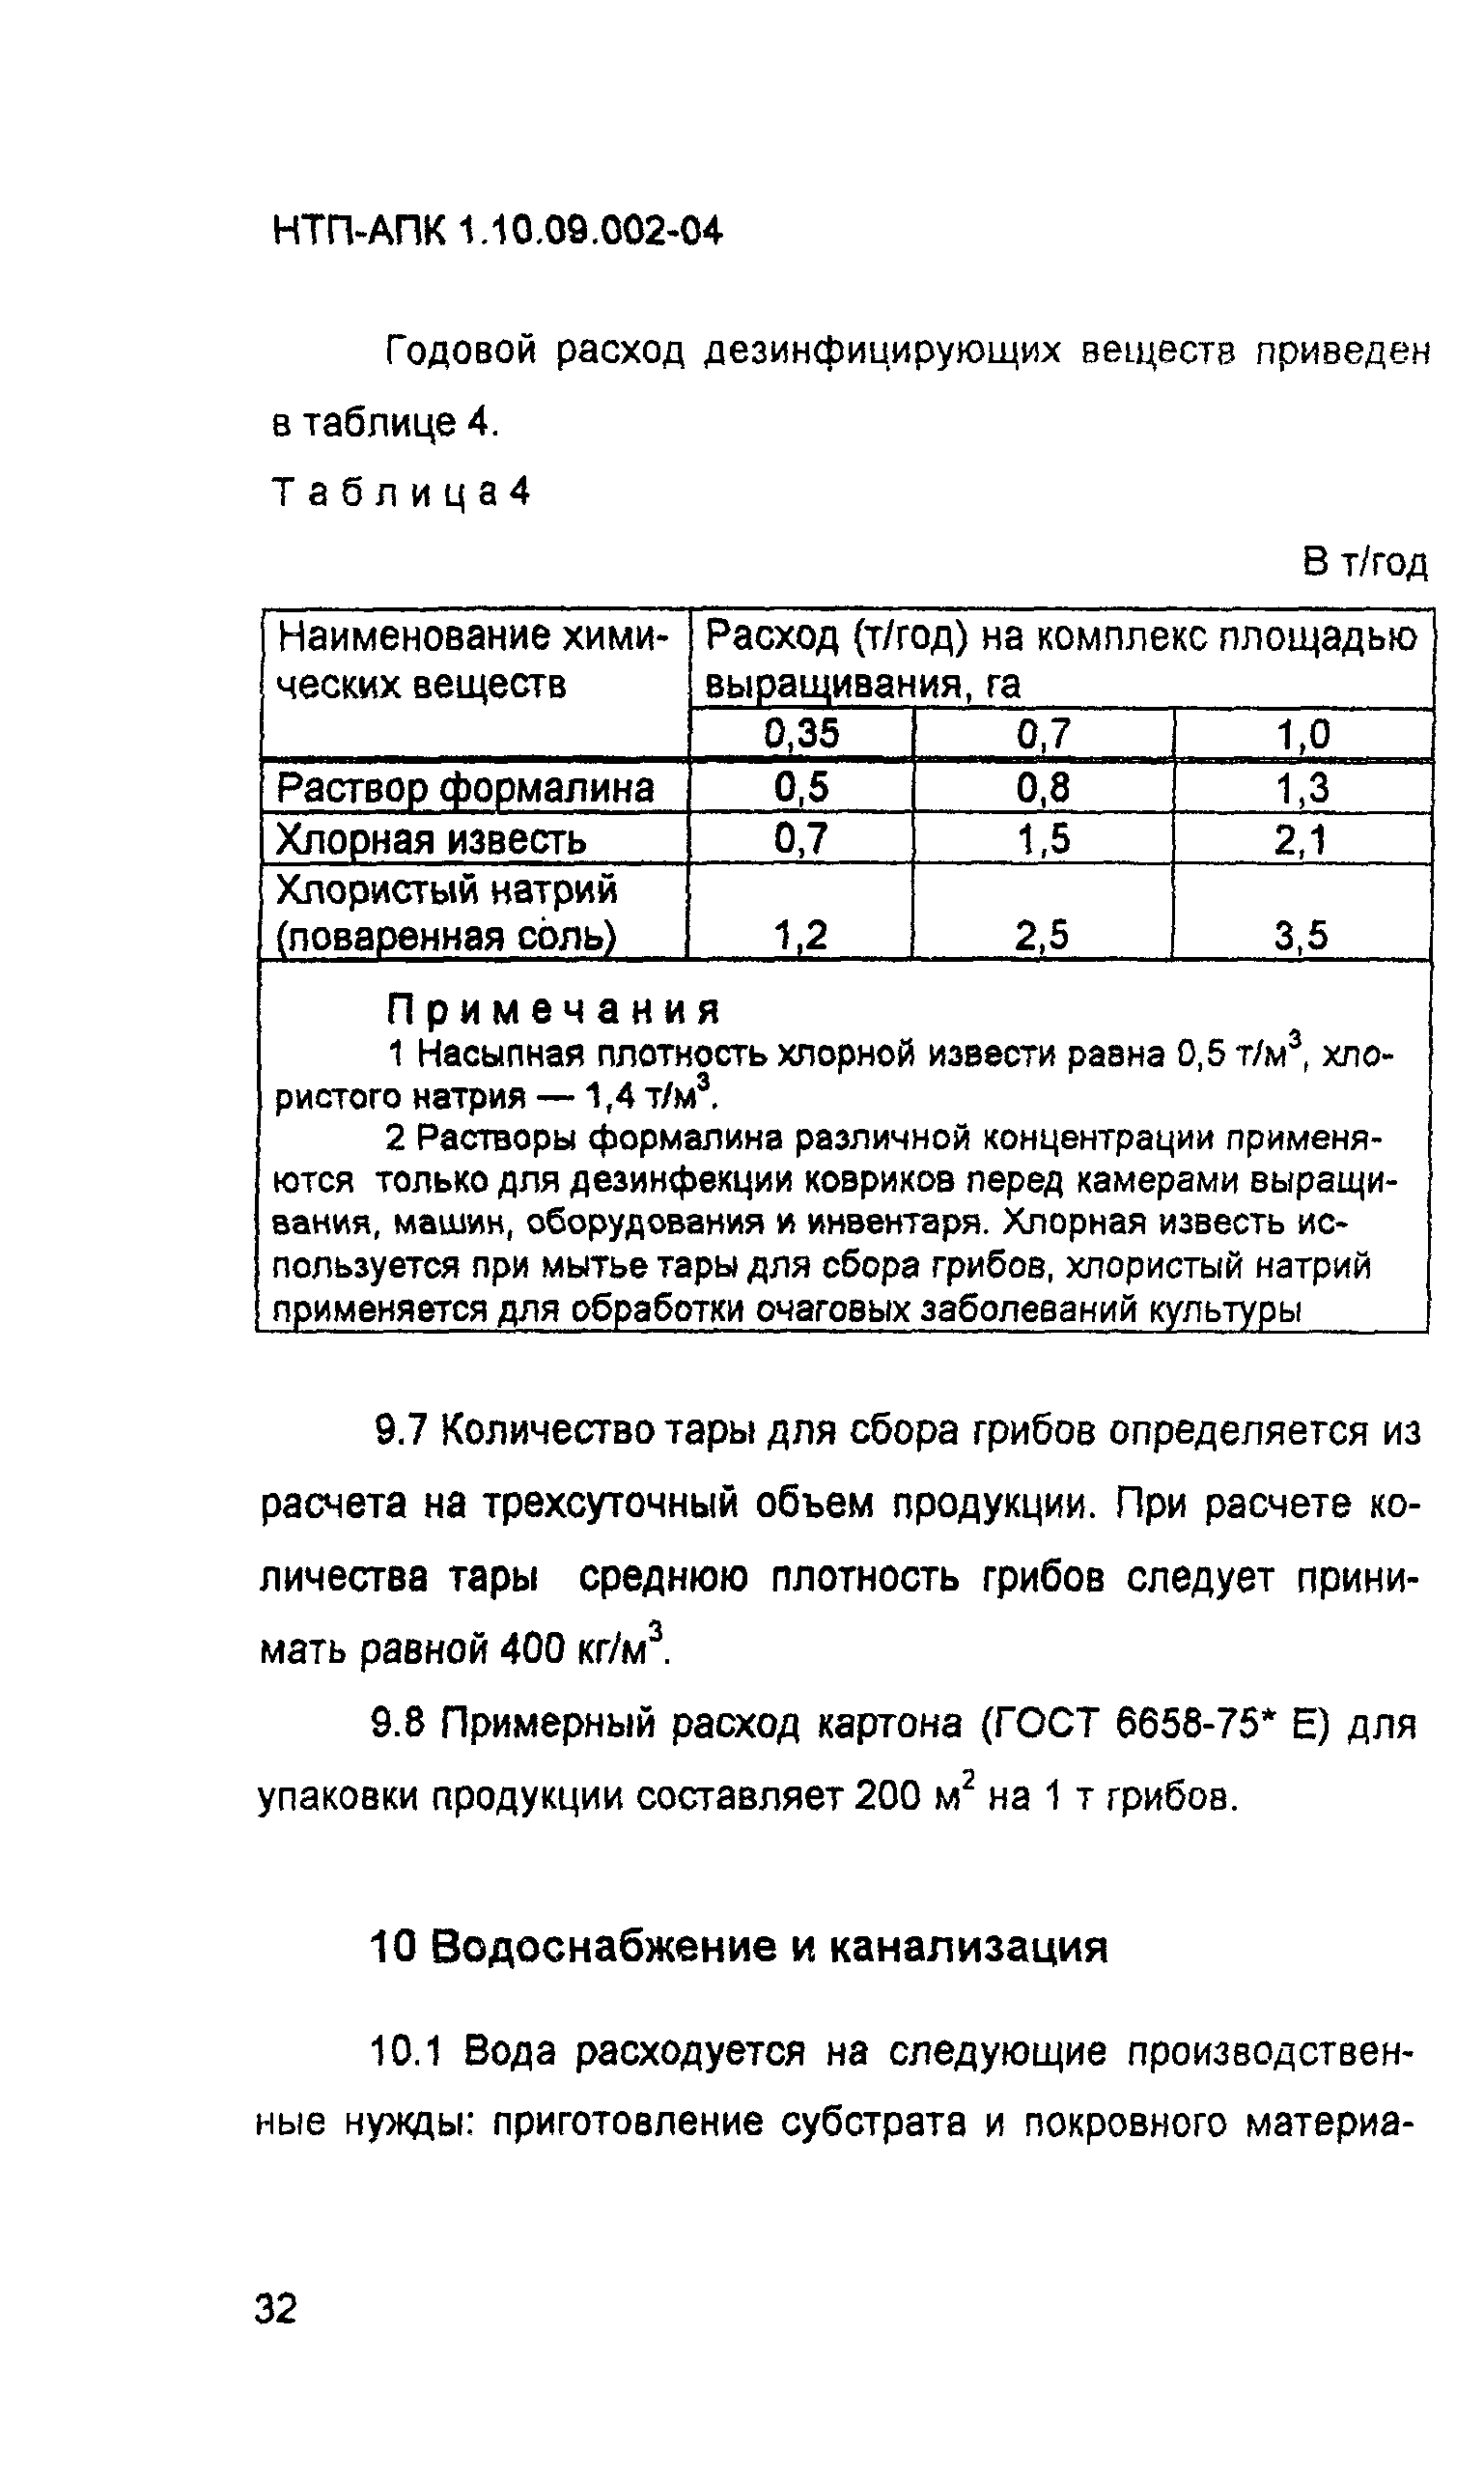 НТП АПК 1.10.09.002-04